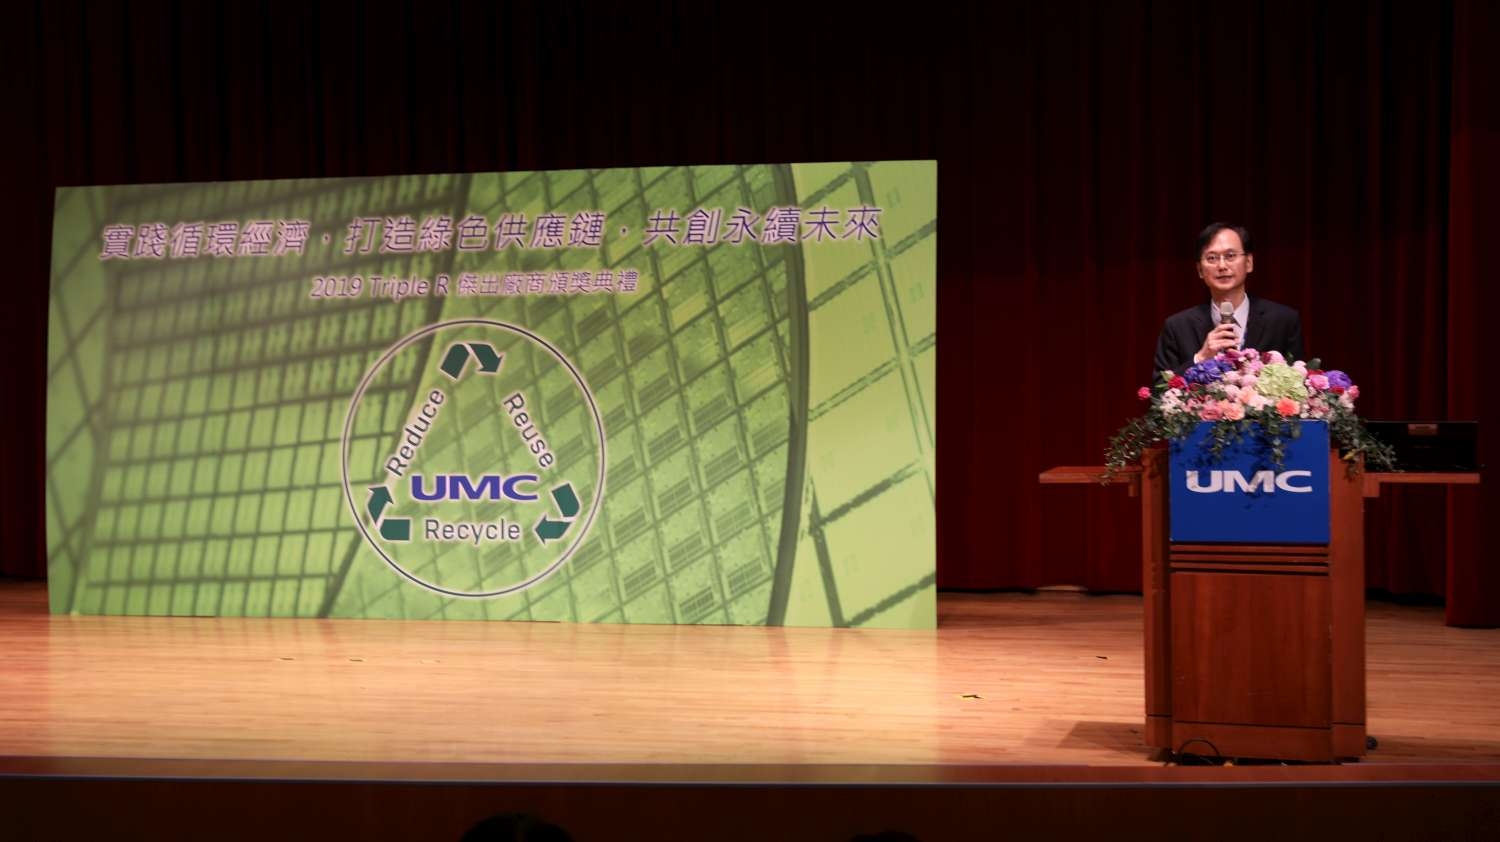 循環經濟當道！林智堅市長感謝聯華電子減碳28萬公噸 邀請企業共同打造低碳永續城市小圖共6張，pic2